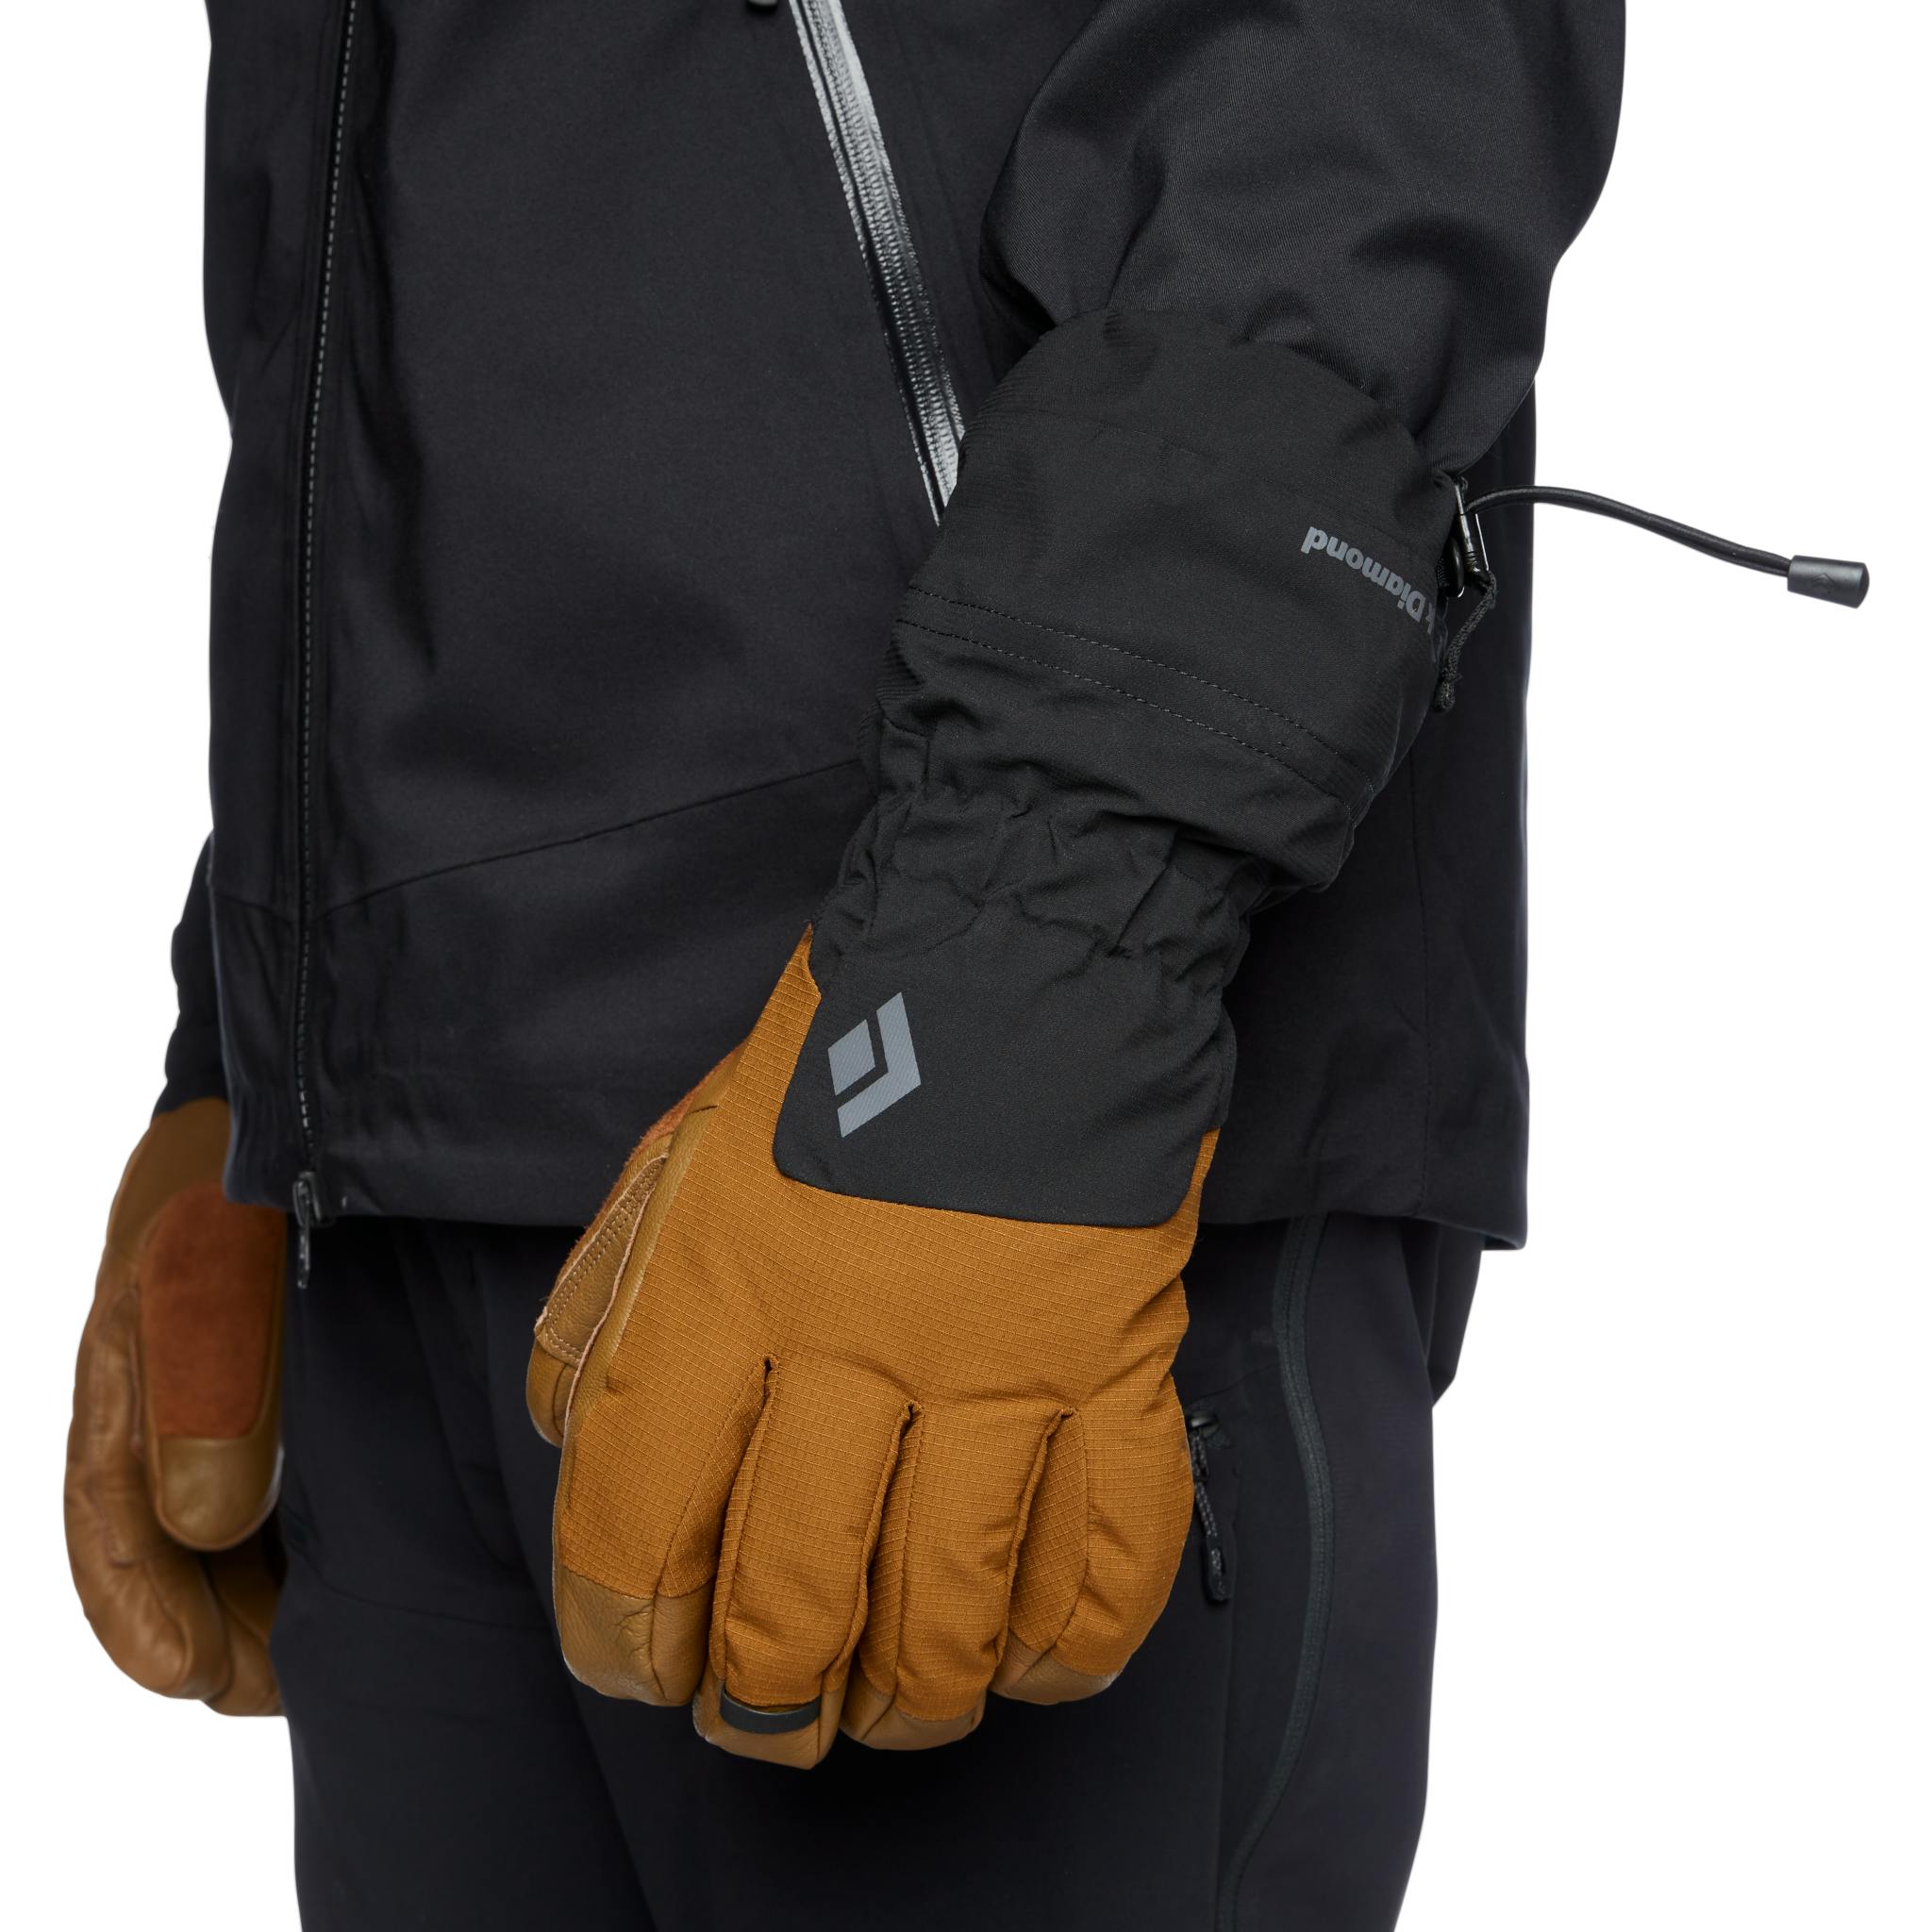 Gants de protection pour la pratique du snowboard : Maxwello AS de